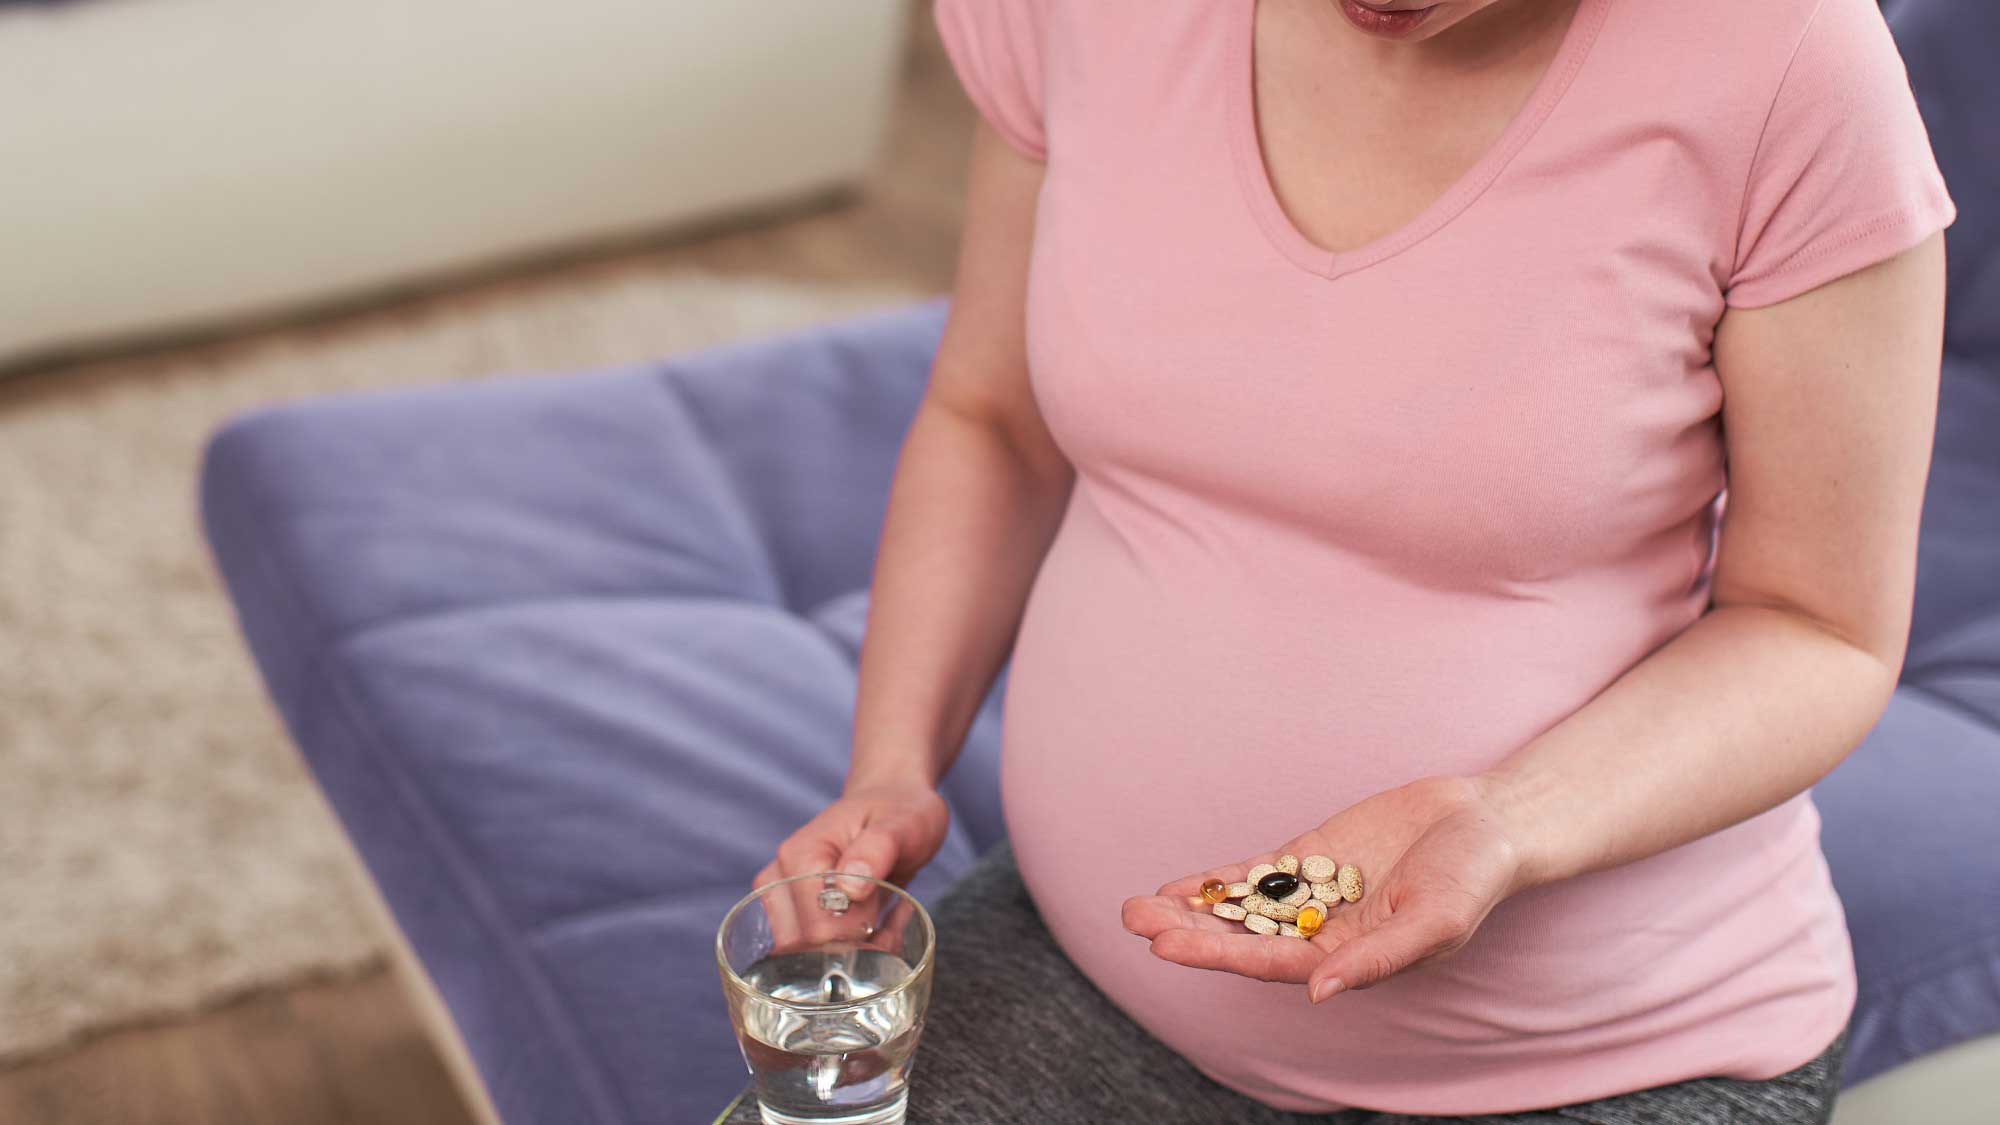 اهمیت بررسی داروهای مصرفی در دوران بارداری| دوست اوتیسم